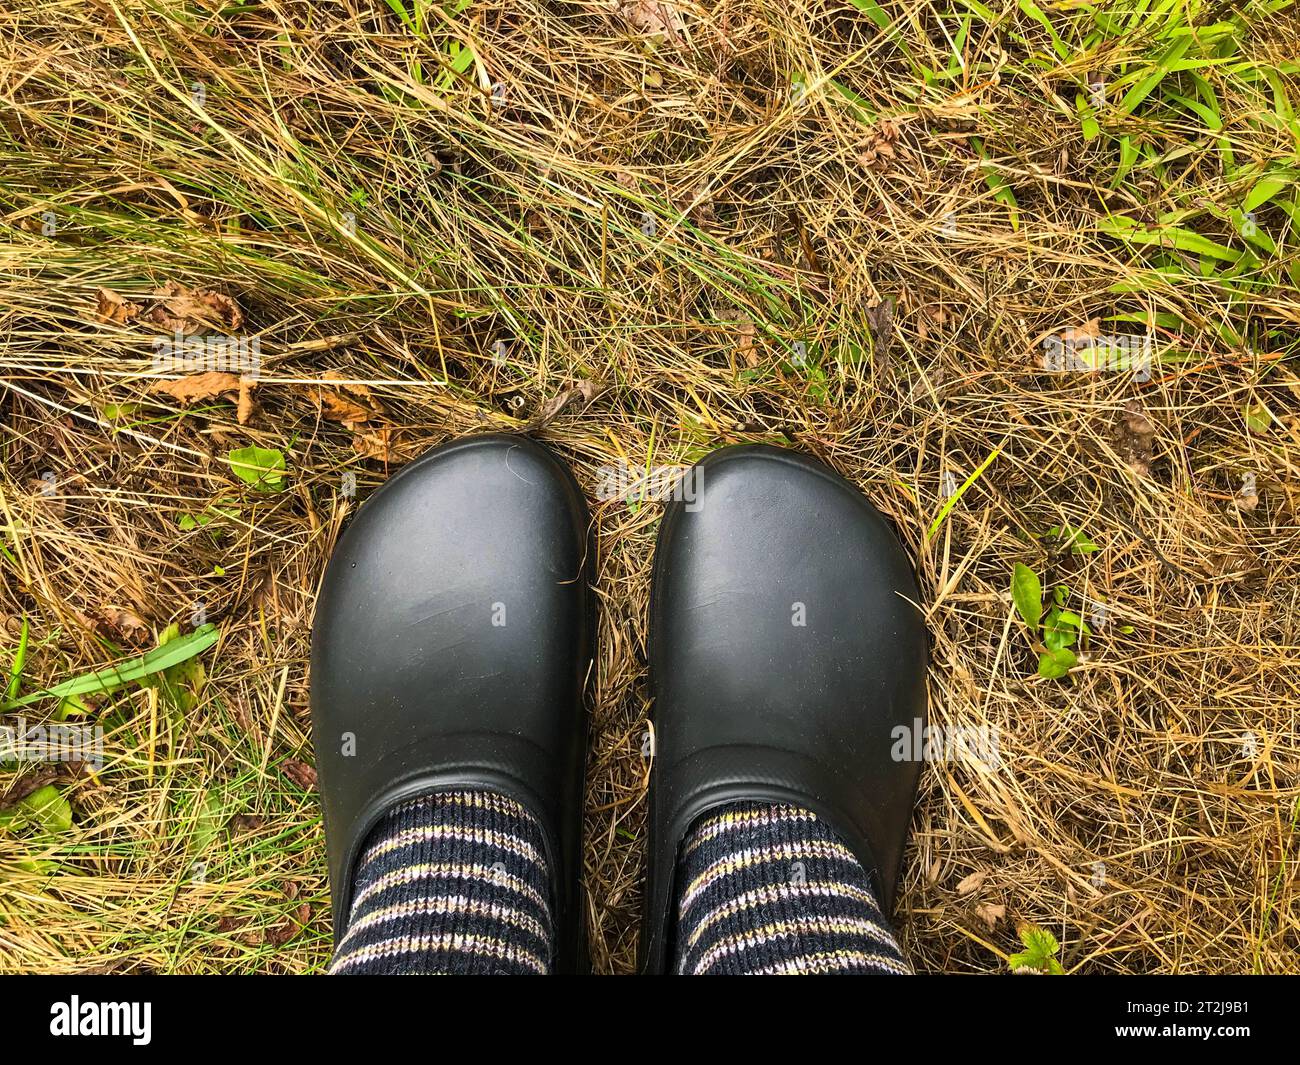 Bequeme und stilvolle Kleidung für den Förster. Schwarze Gummigaloschen werden an den Füßen in warmen Wollsocken getragen. Isolierung gegen kaltes Wetter. Herbst nass Stockfoto